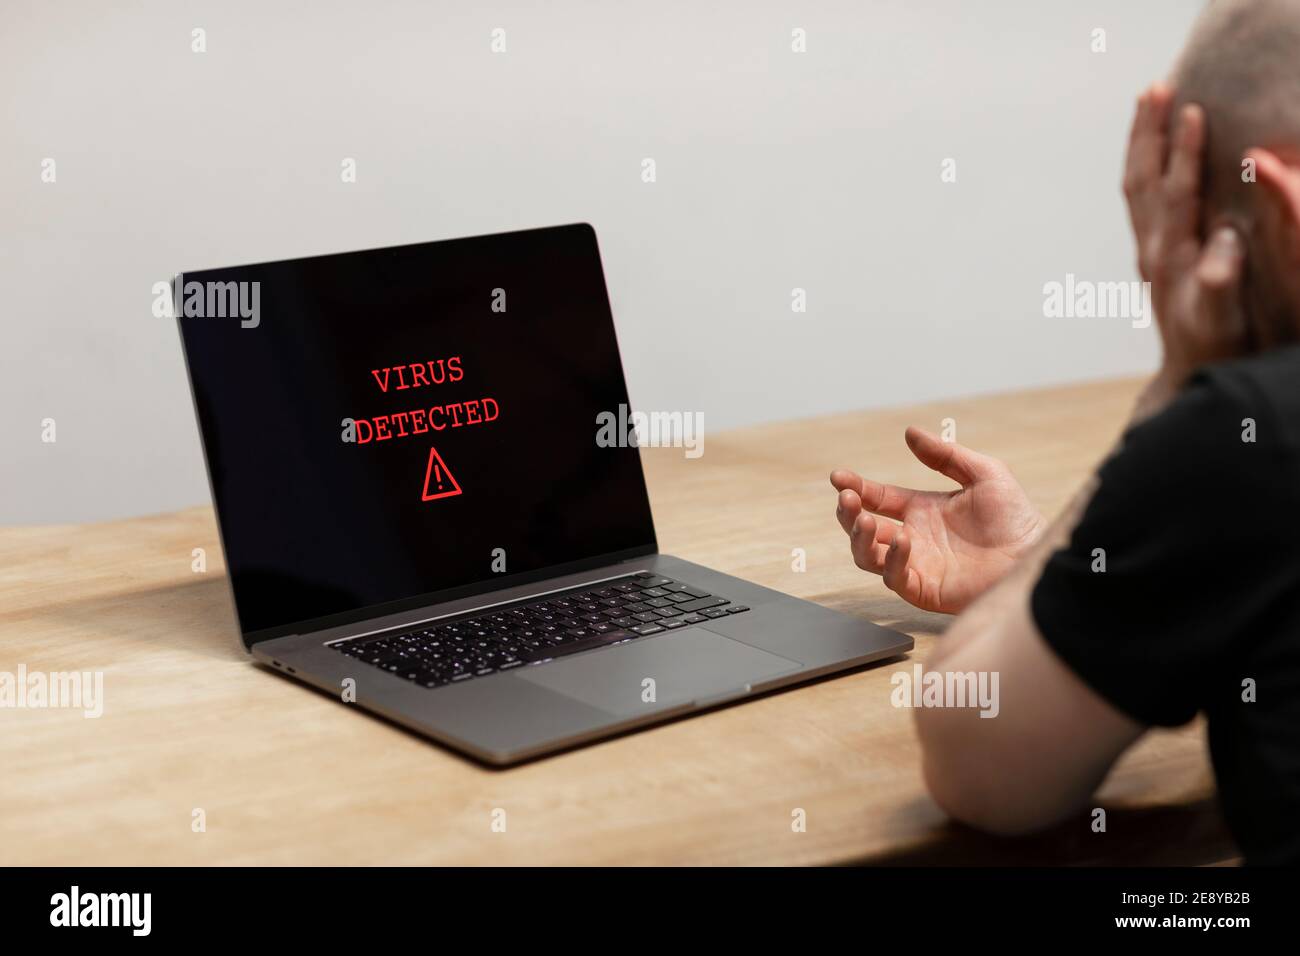 Auf einem Laptop wurde ein Virus entdeckt. Ein verzweifelter Mann sitzt vor seinem Computer mit der Warnung auf seinem Bildschirm. Cyberkriminalität, infiziertes unsicheres Gerät Stockfoto